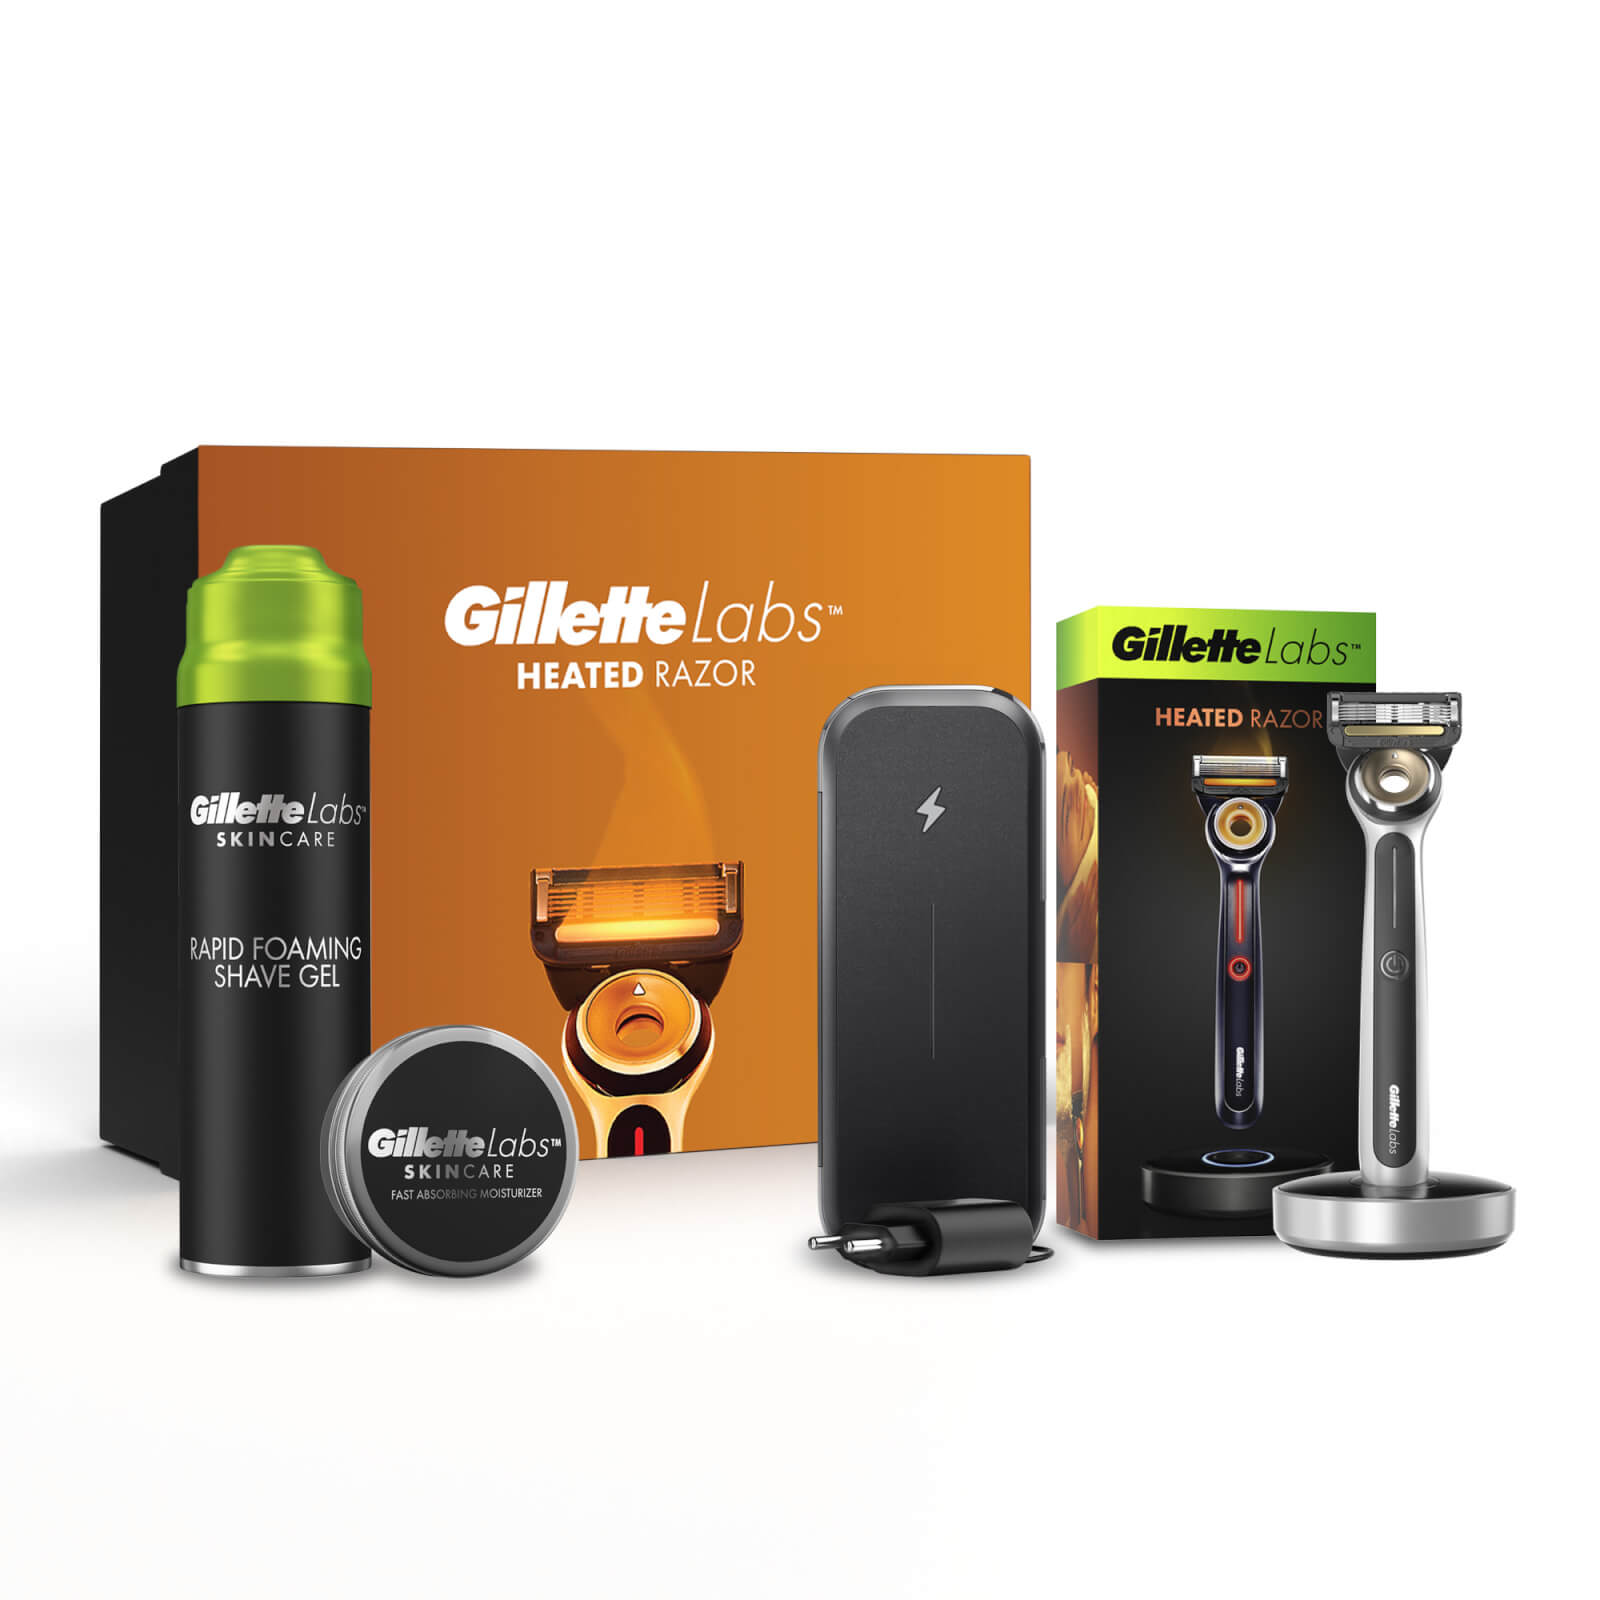 Gillette Labs Heated Razor Travel Essentials Giftset